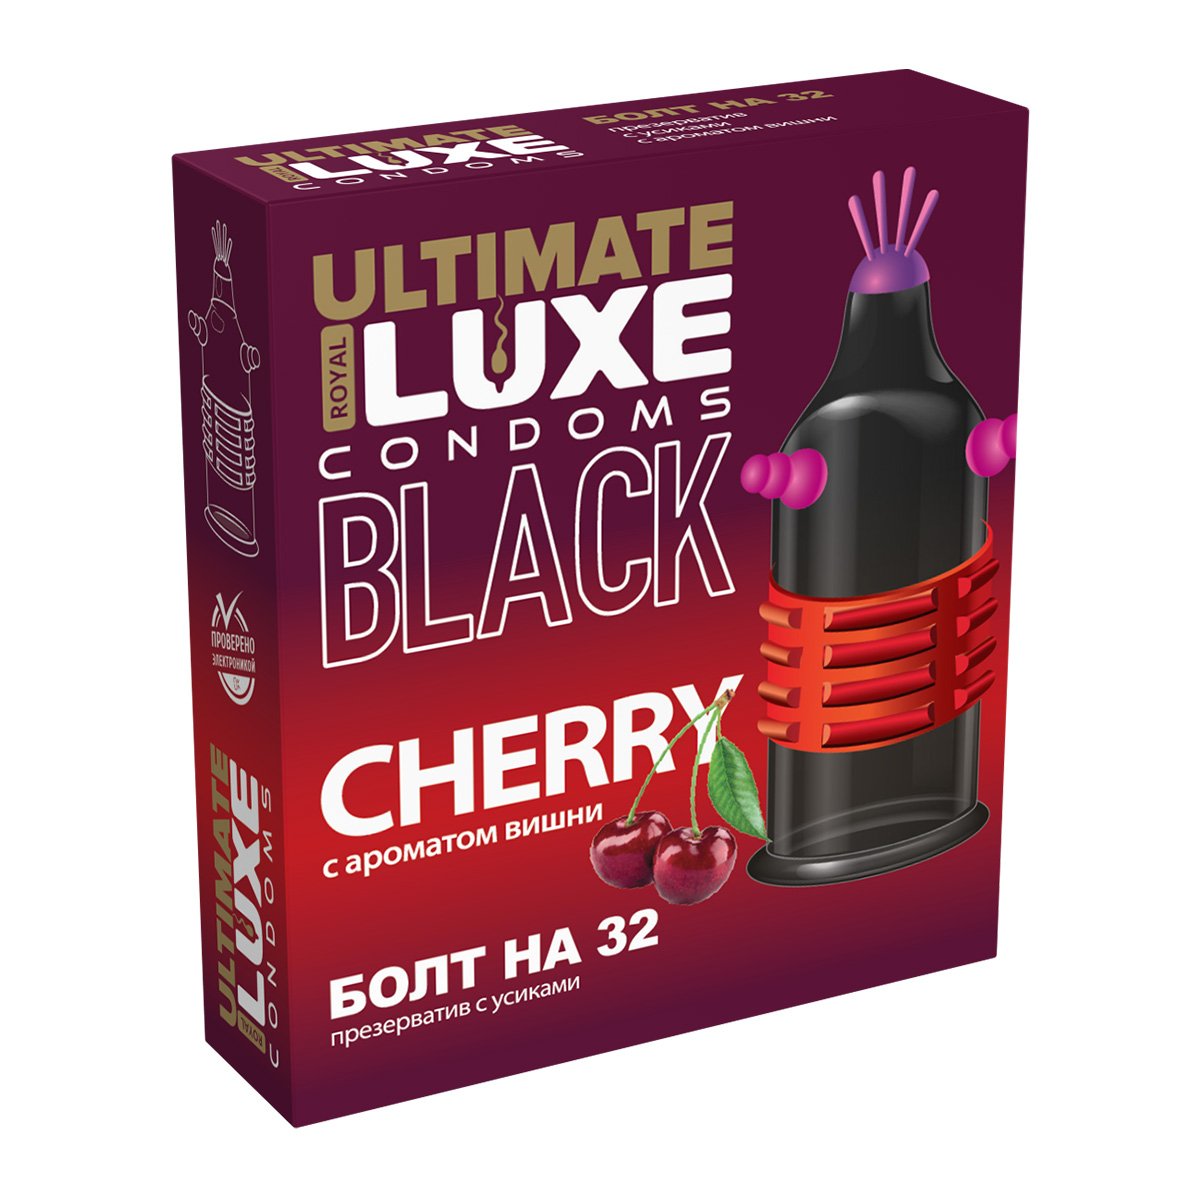 Эксклюзивный черный презерватив Luxe EXTREME BLACK БОЛТ НА 32  с ароматом вишни, 1 штука